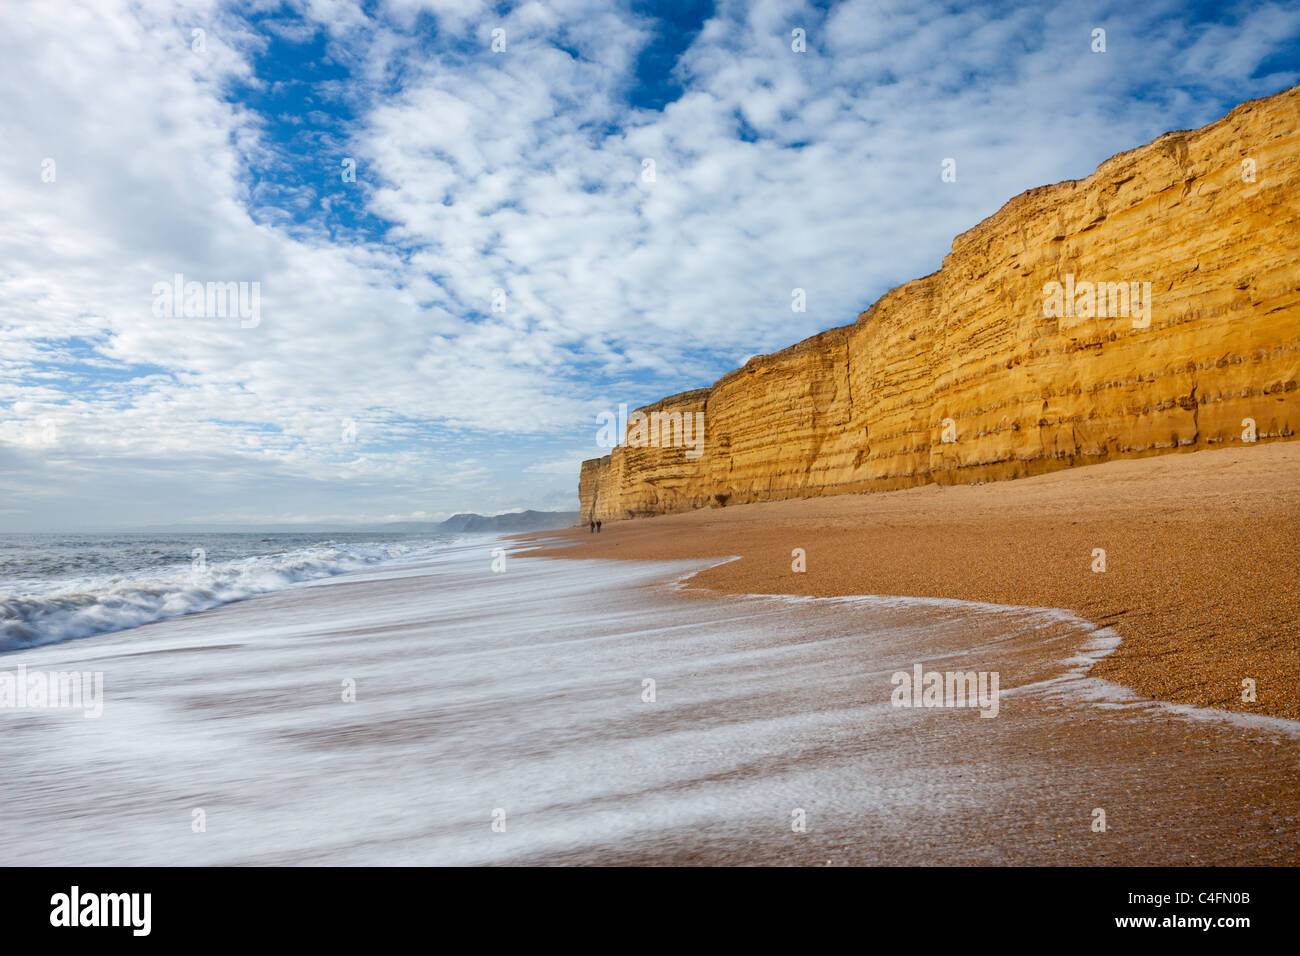 Lave las ondas colmena limpia playa respaldada por imponentes acantilados de piedra arenisca, Burton Bradstock, Dorset, Inglaterra. Invierno (febrero de 2011). Foto de stock